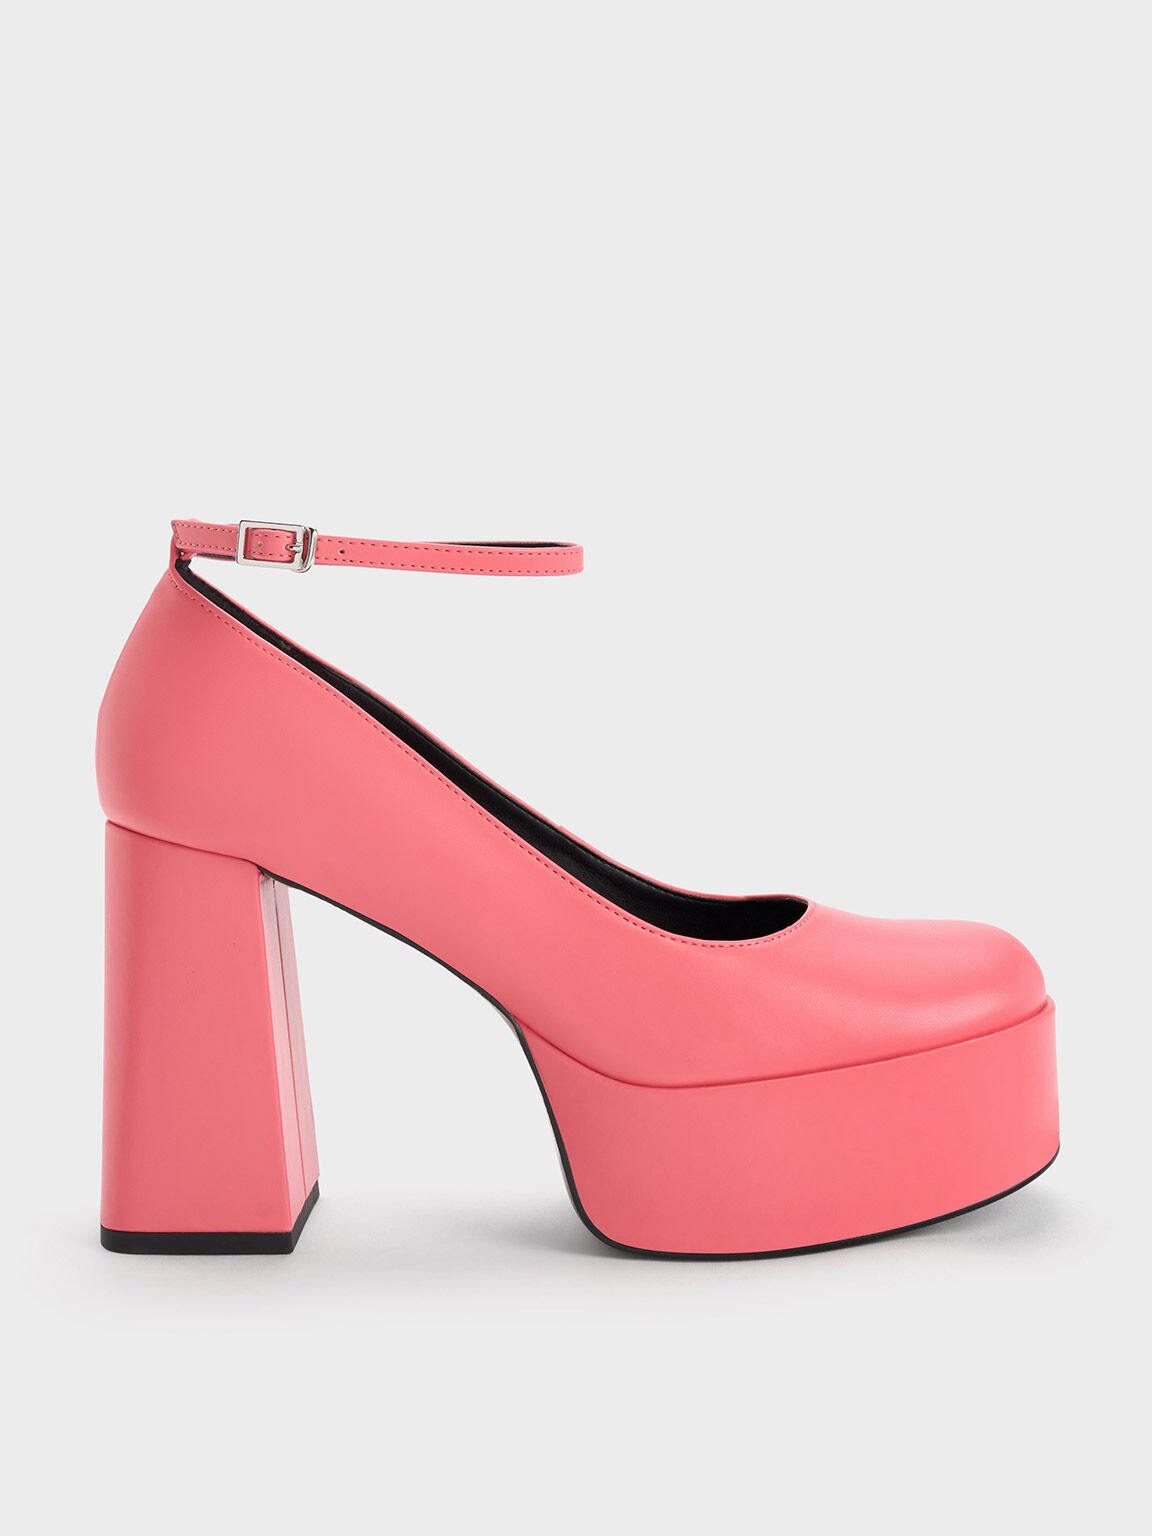 Zapatos de Plataforma y Correa al Tobillo, Pink, hi-res